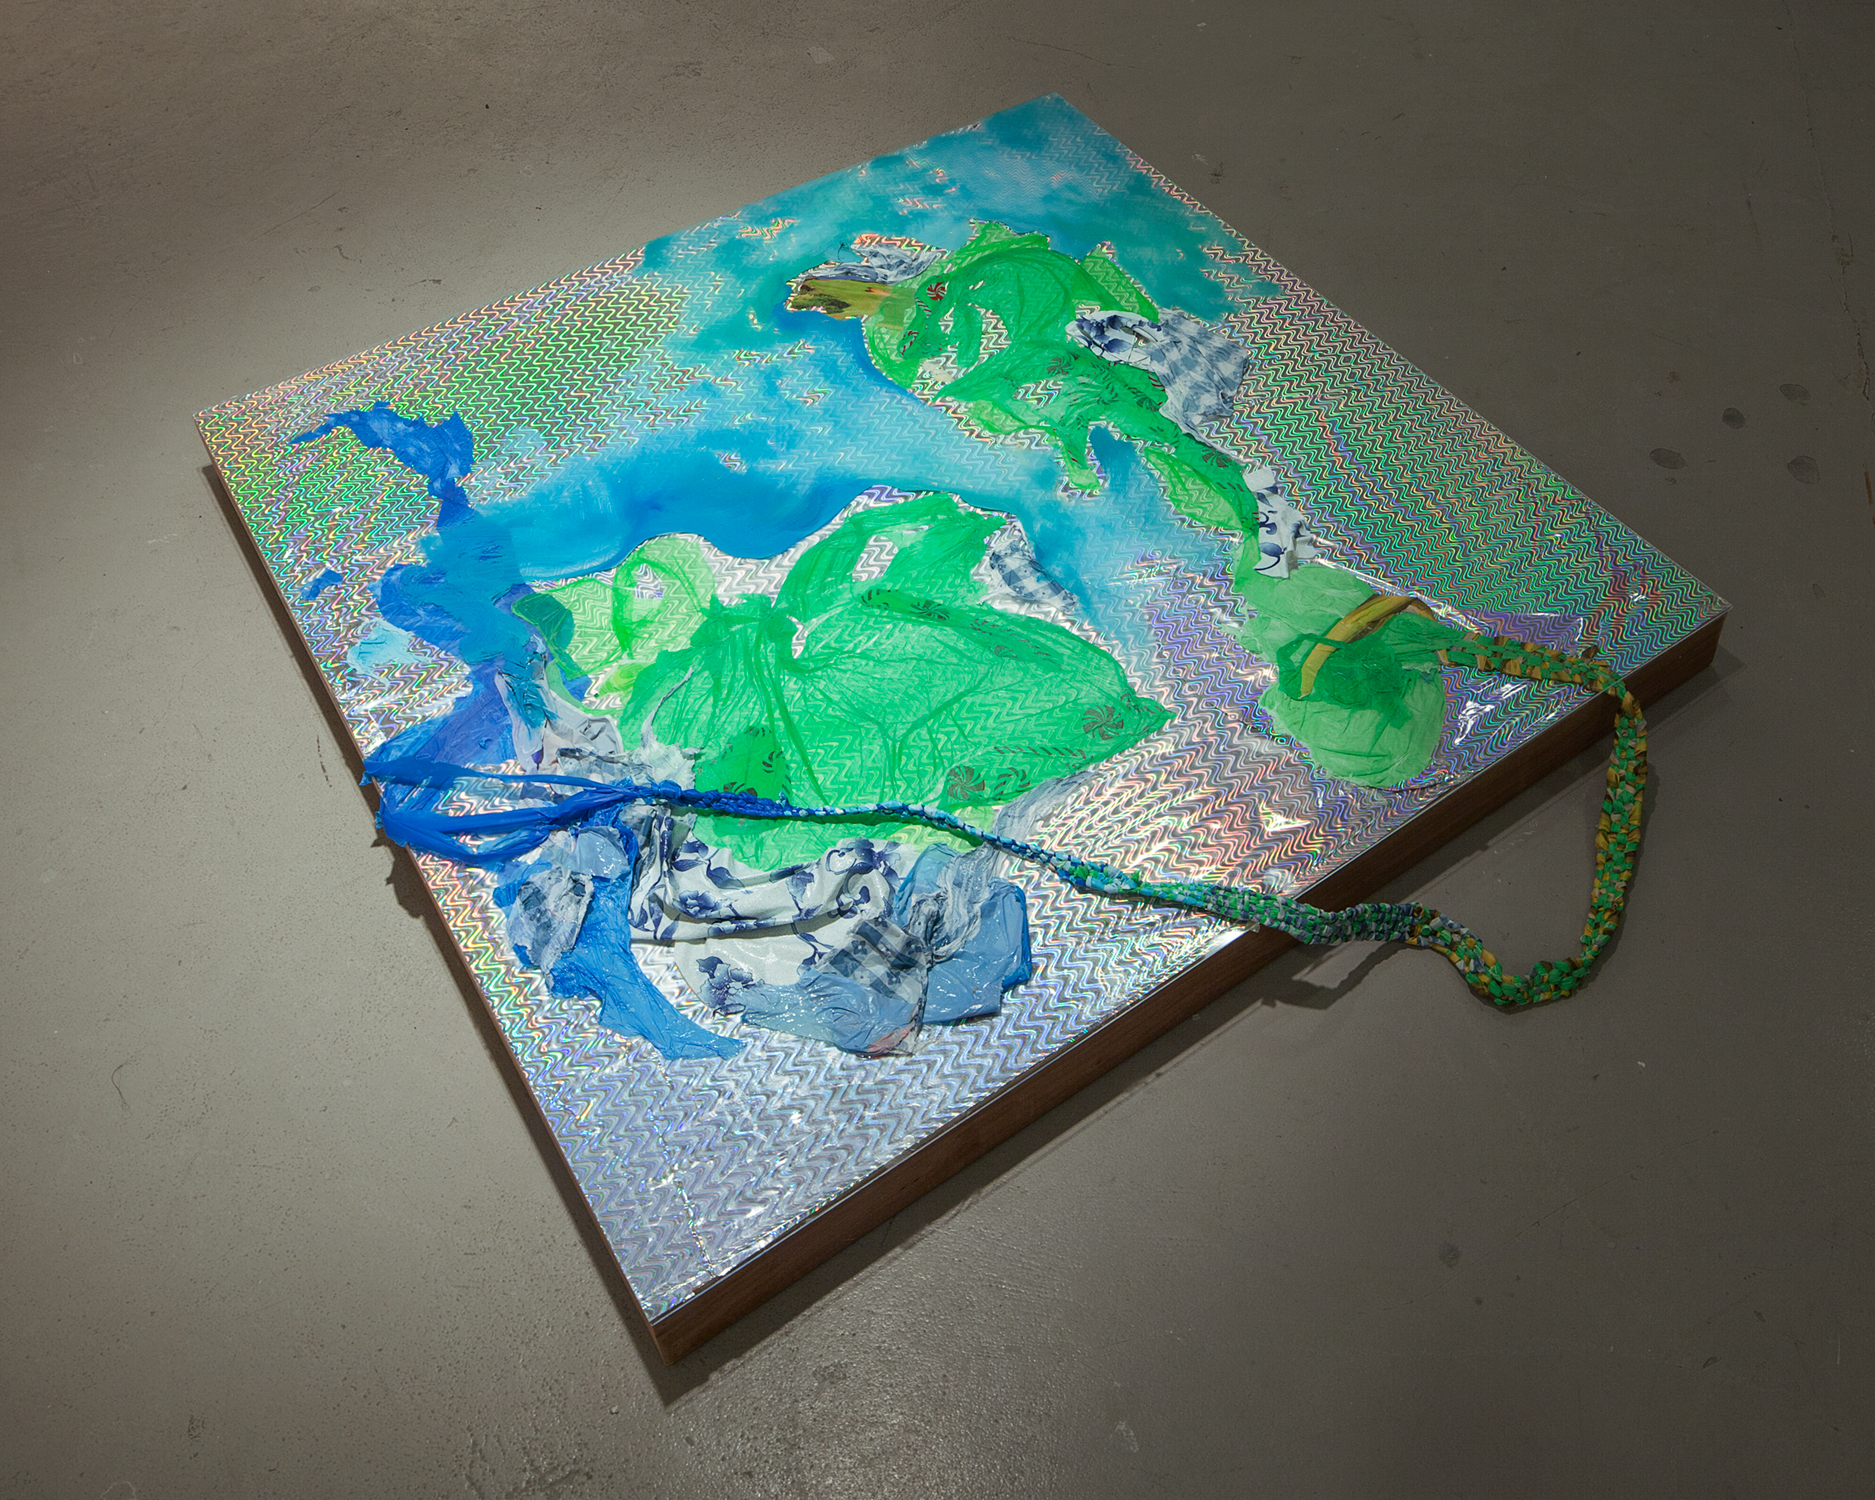   Flashplain , 2015, Oil, plastic, plexiglass, found paper, wood, 48 x 48 x 4 inches 